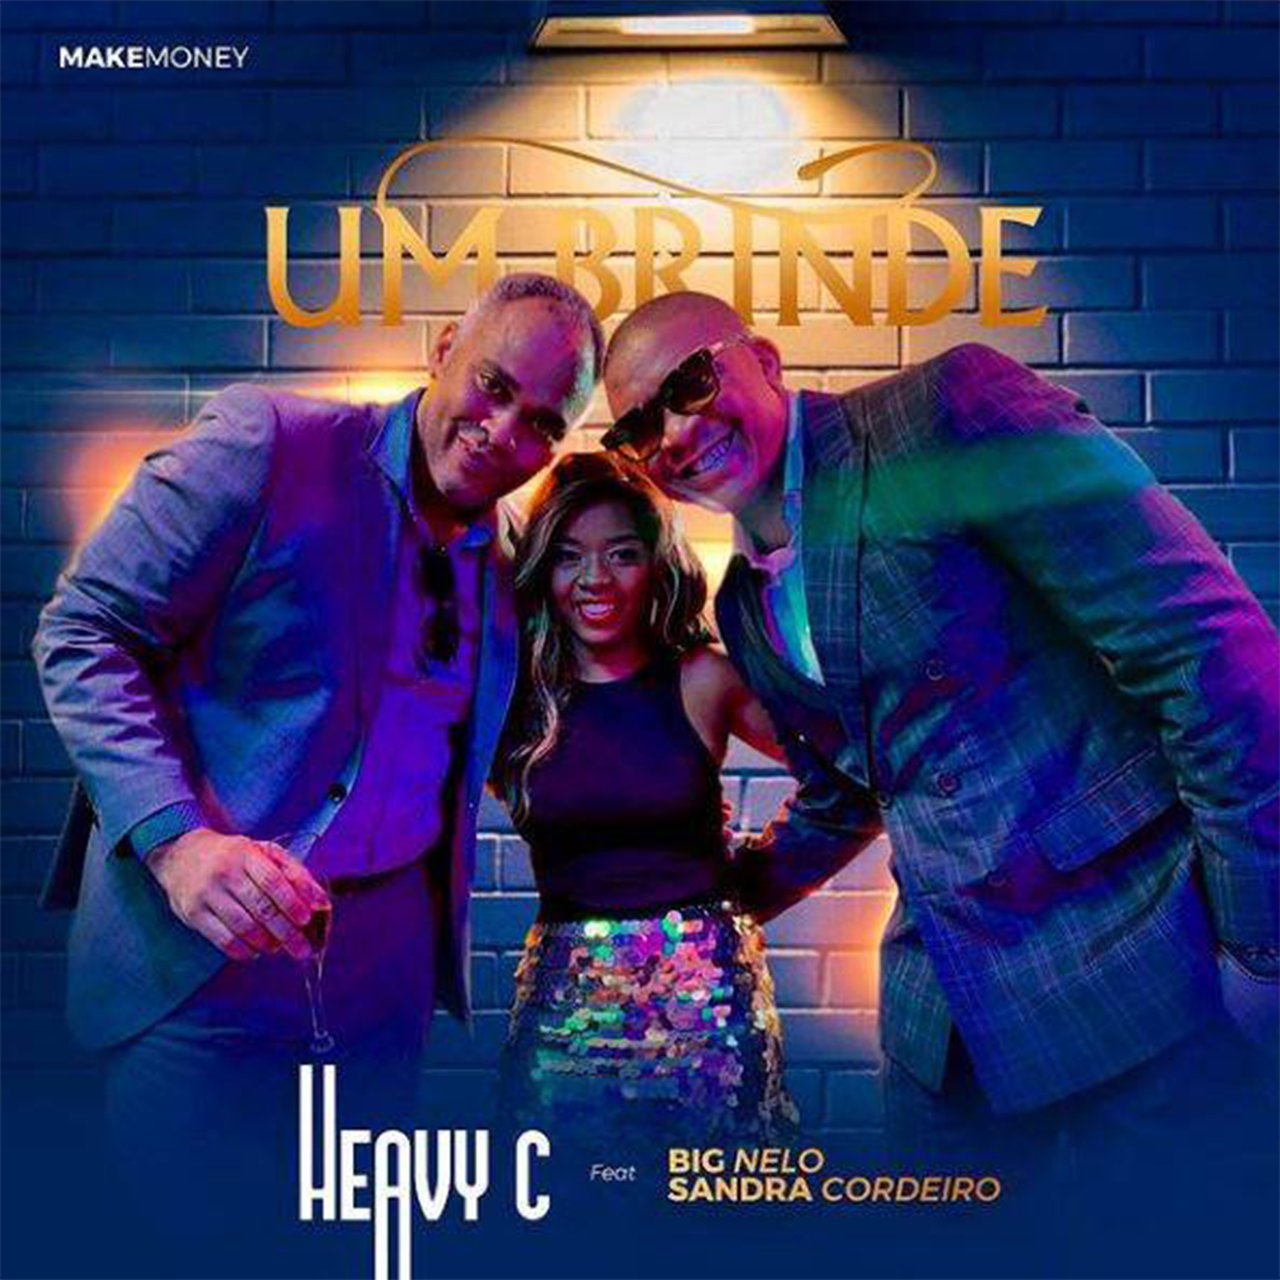 Heavy C - Um Brinde (ft. Big Nelo and Sandra Cordeiro) (Cover)